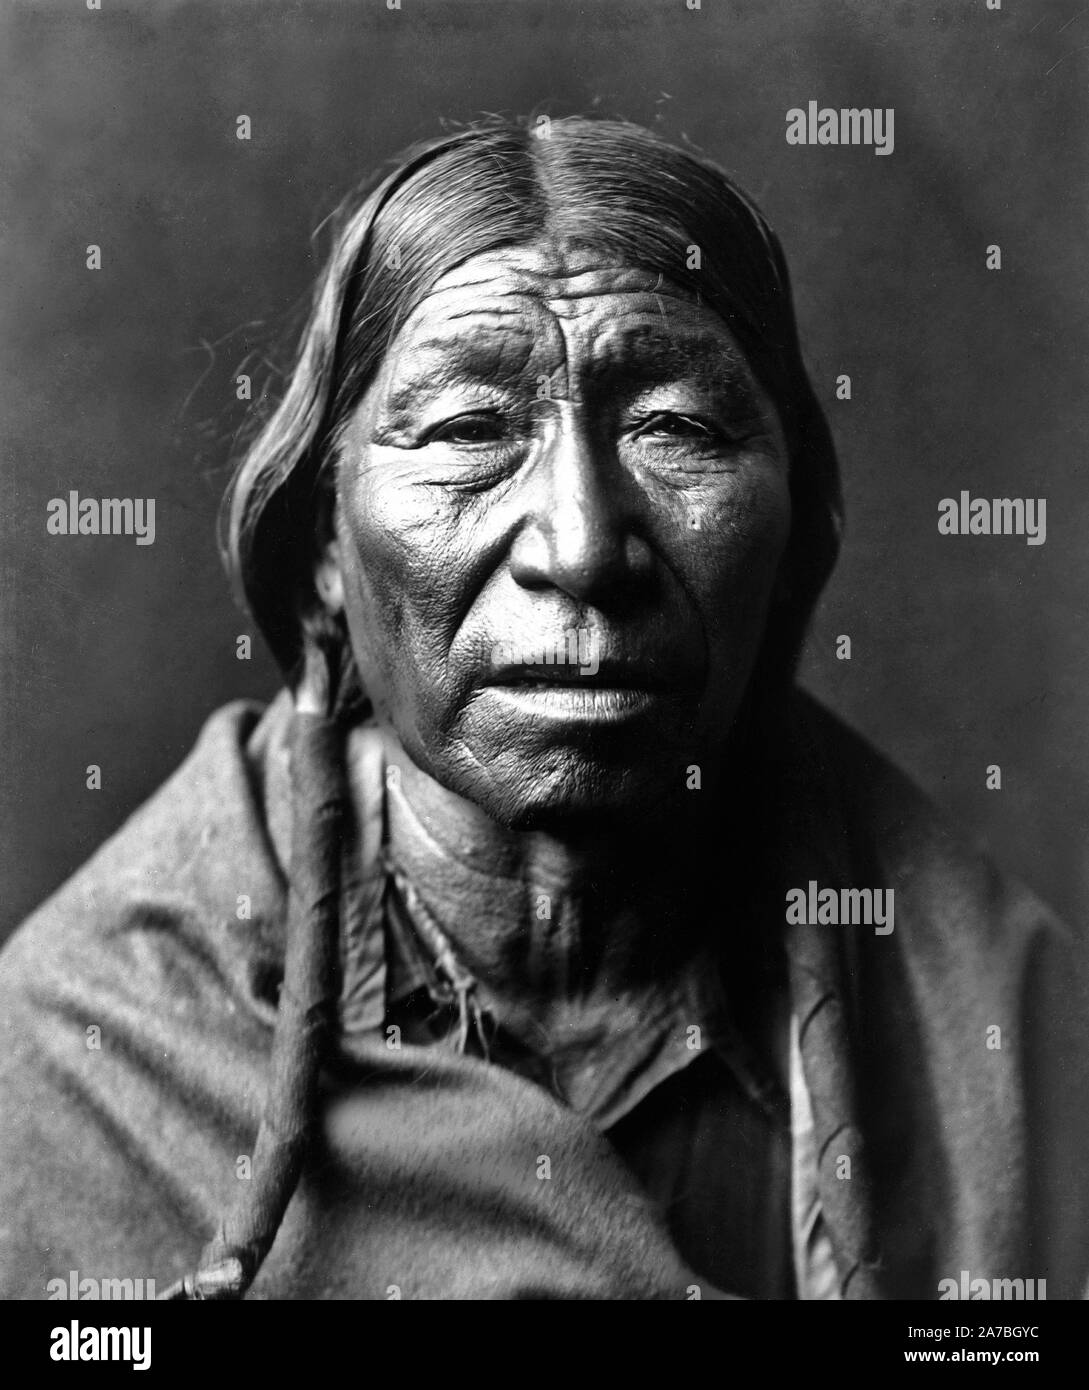 Edward S. Curtis indiens des États-Unis - homme Indien Cheyenne ca. 1910 Banque D'Images